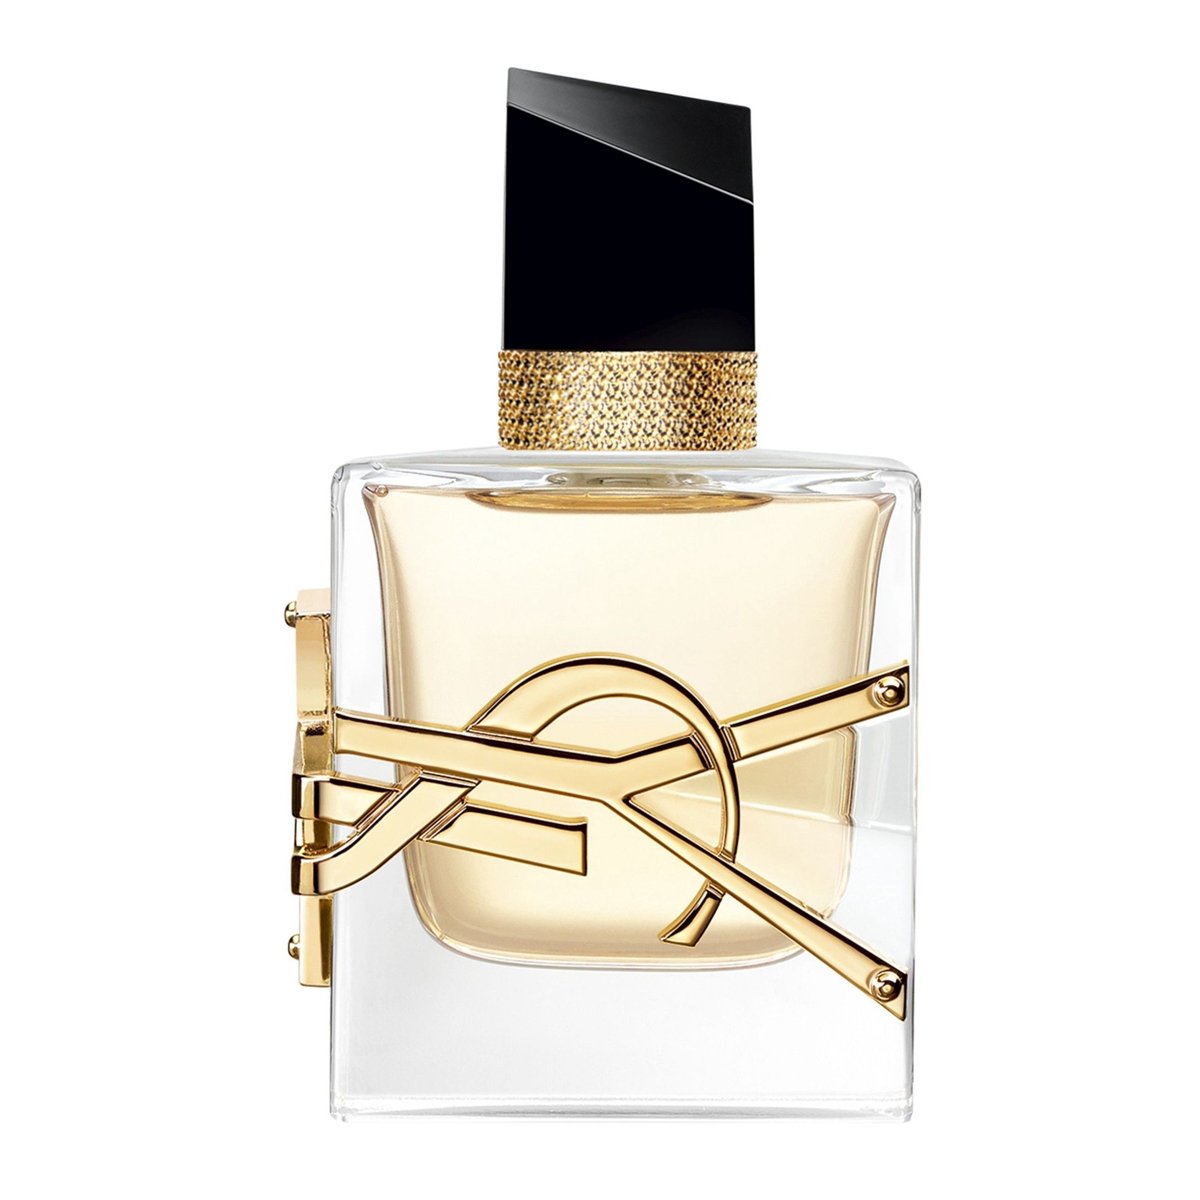 Yves Saint Laurent Libre Eau de Parfum 30ml, £56